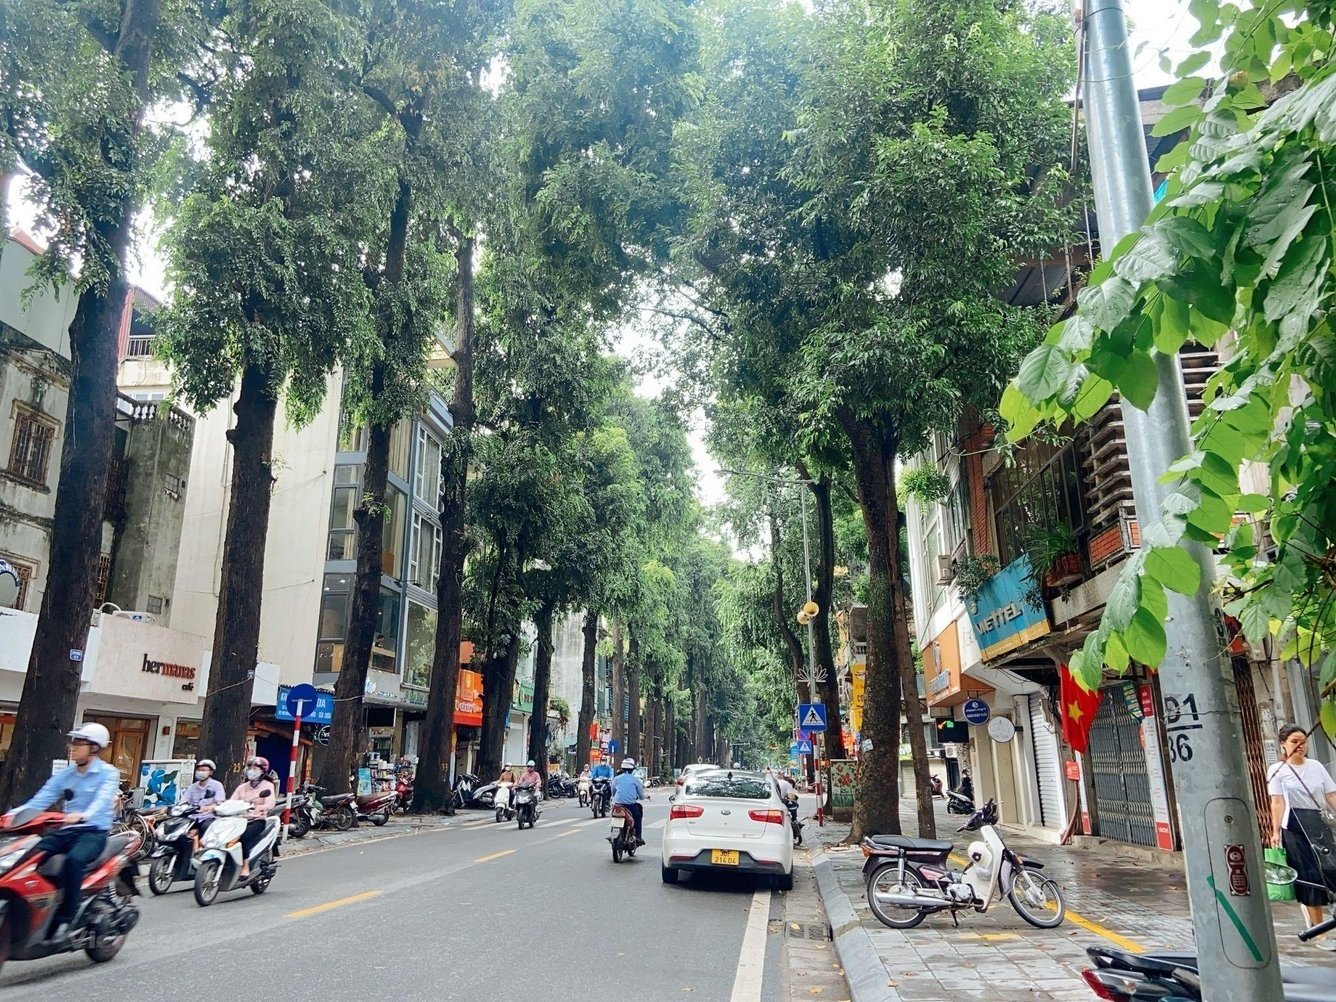 nha-nguyen-can-huong-dong-nam-quan-hai-ba-trung-dang-ban-bao-nhieu-n17t-onehousing-1